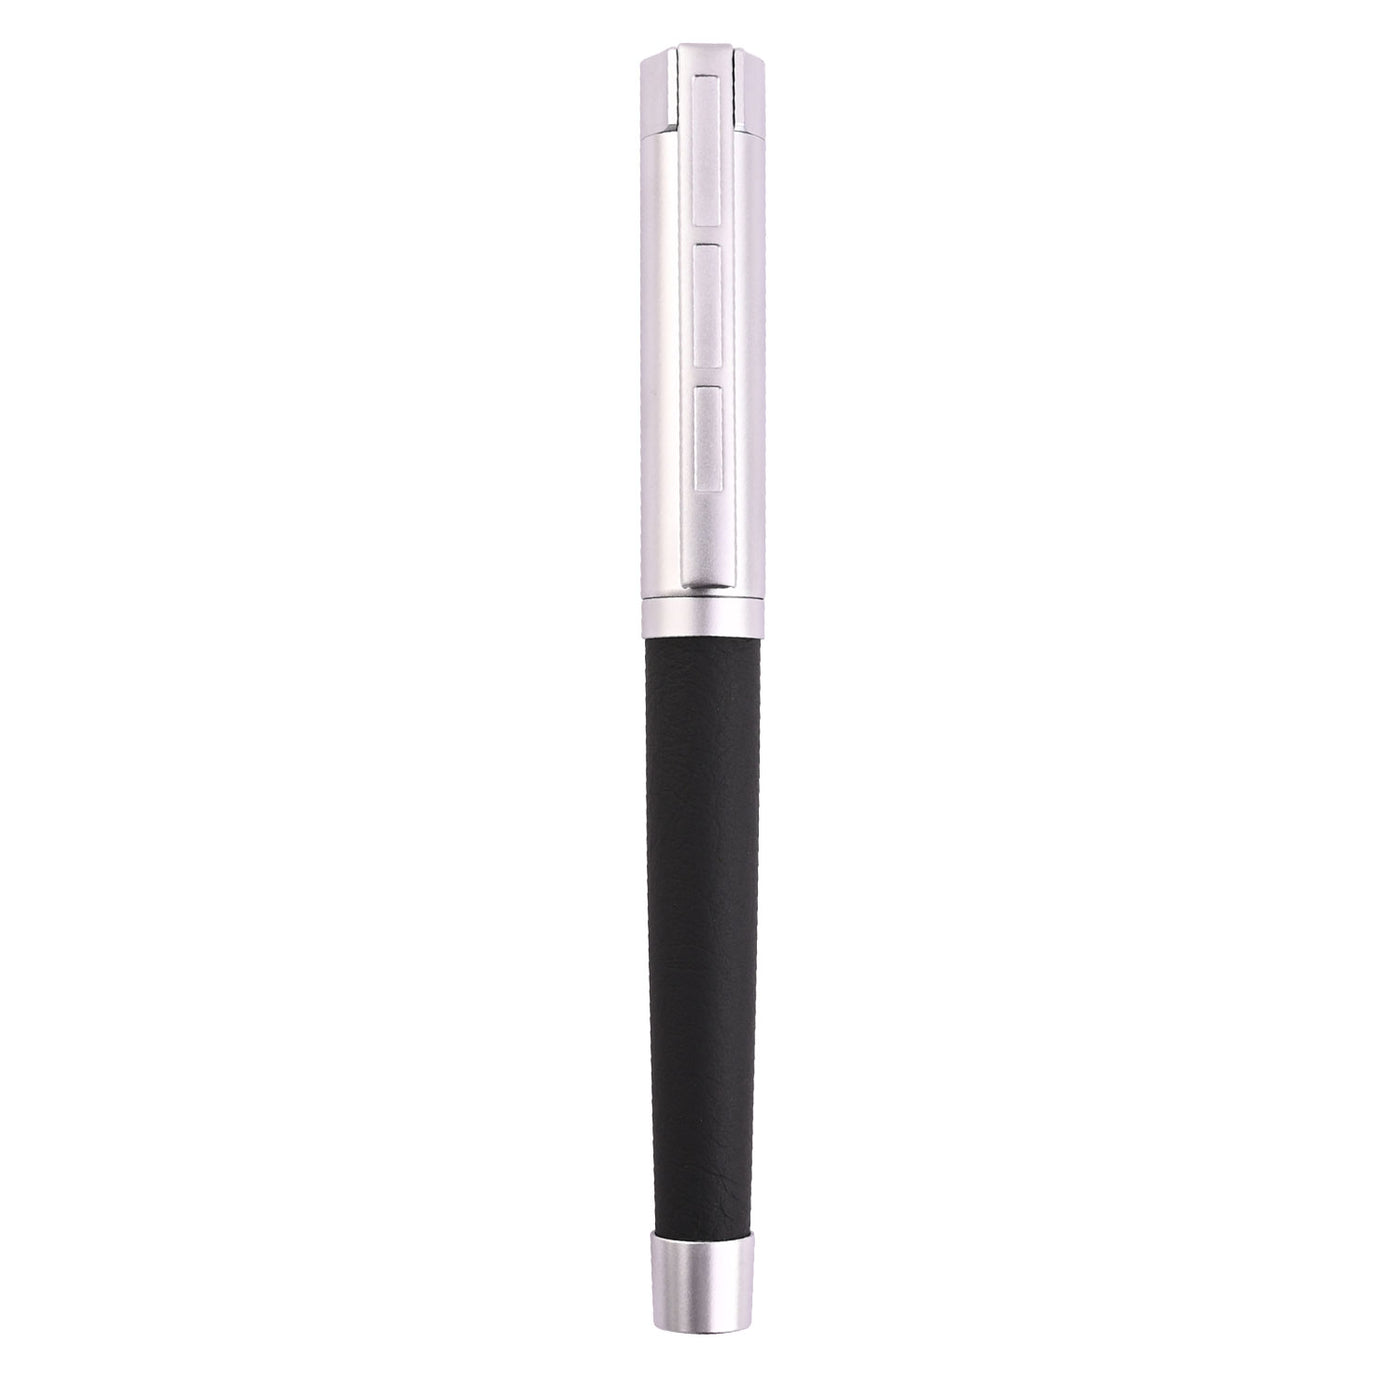 Staedtler Premium Corium Simplex Fountain Pen - Anthracite Leather CT 5